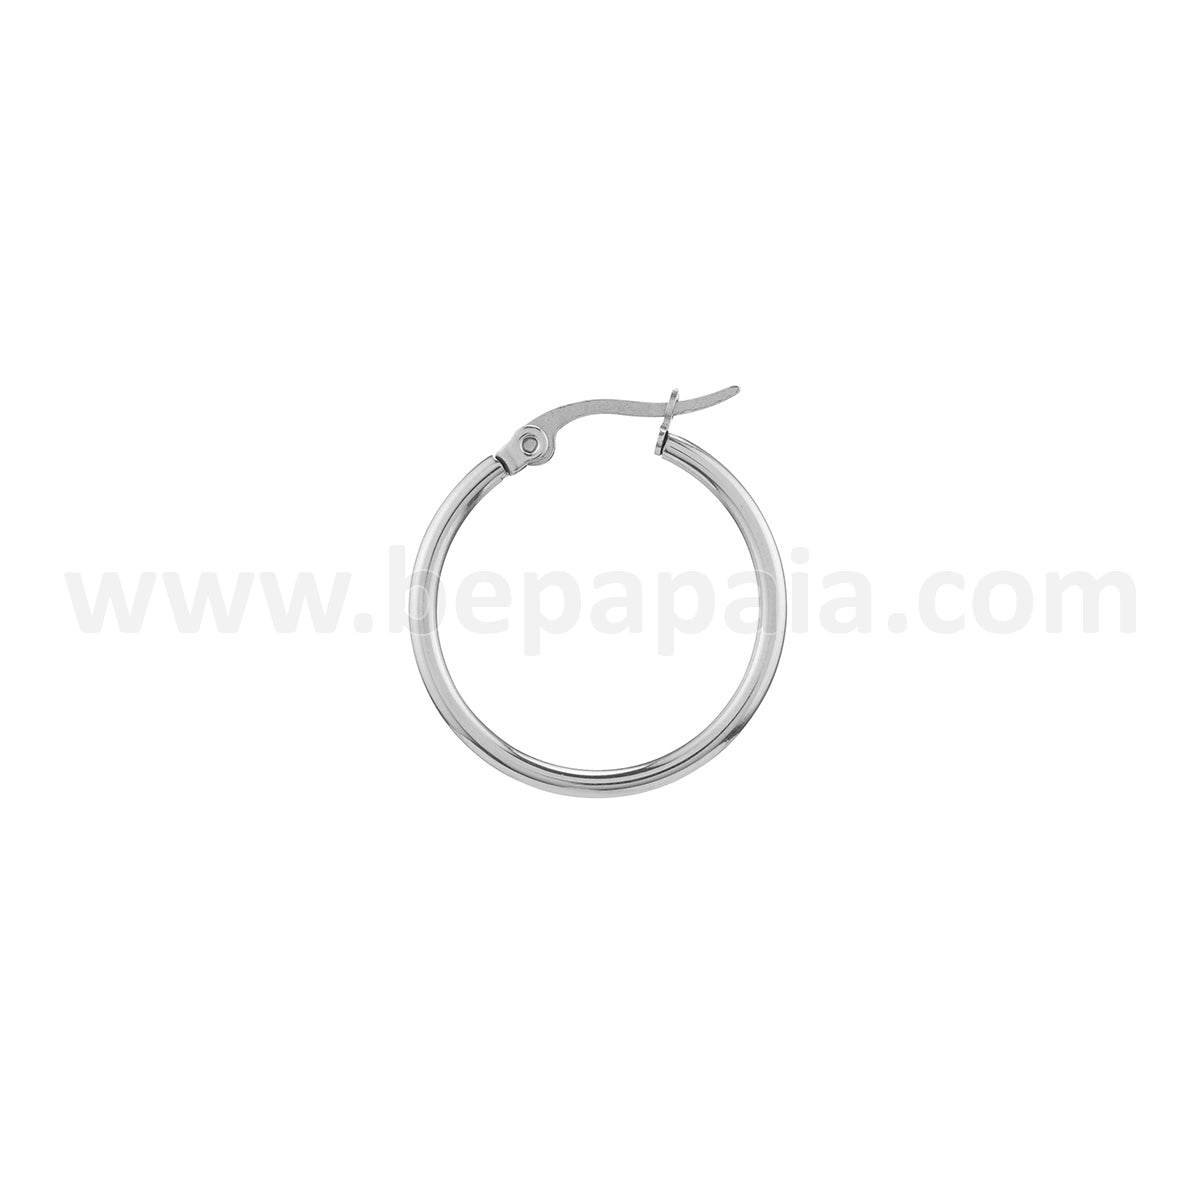 Stainless steel hoop earrings 20-45mm 